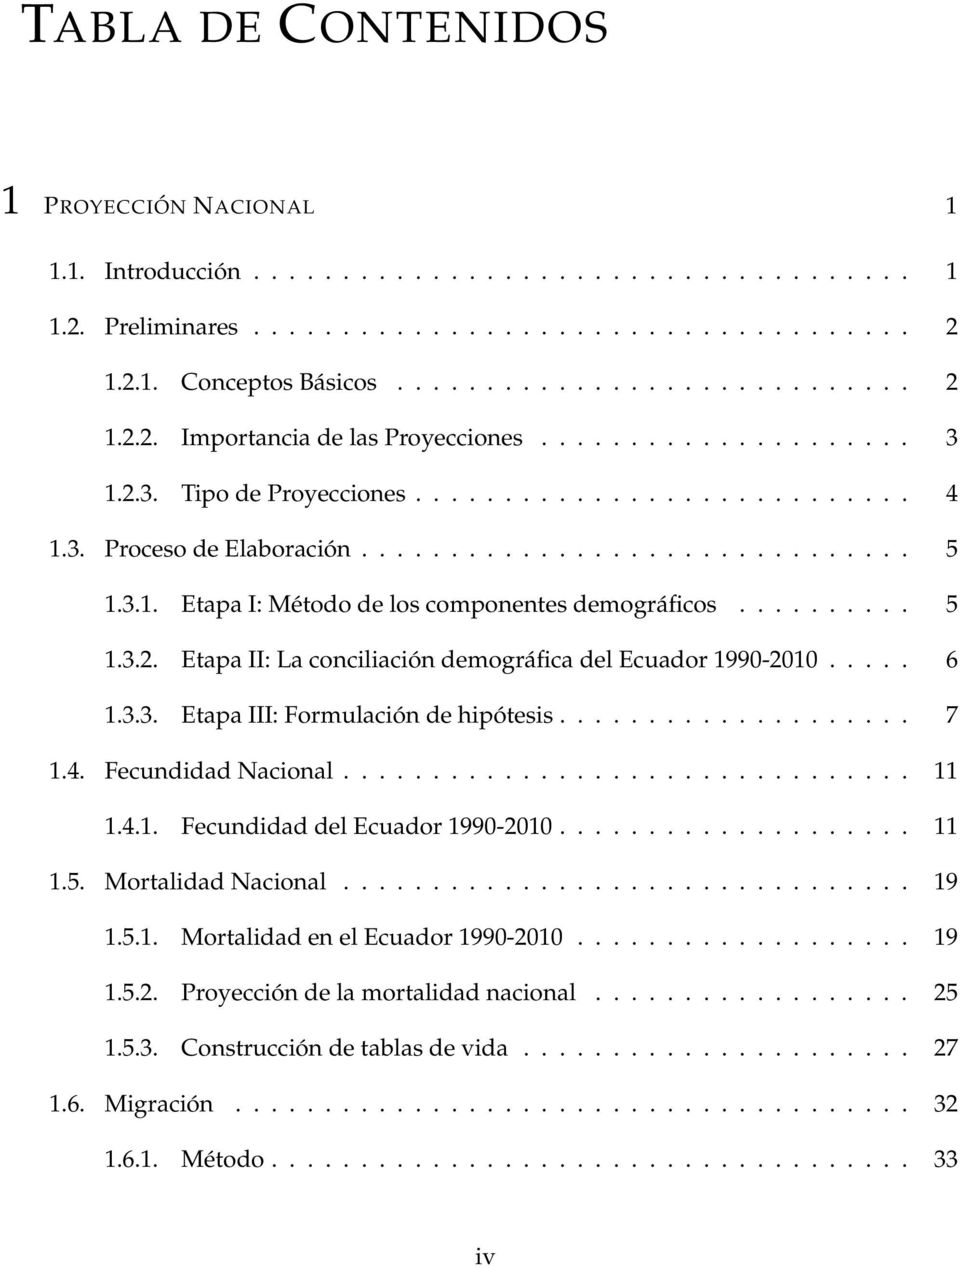 ......... 5 1.3.2. Etapa II: La conciliación demográfica del Ecuador 1990-2010..... 6 1.3.3. Etapa III: Formulación de hipótesis.................... 7 1.4. Fecundidad Nacional................................ 11 1.